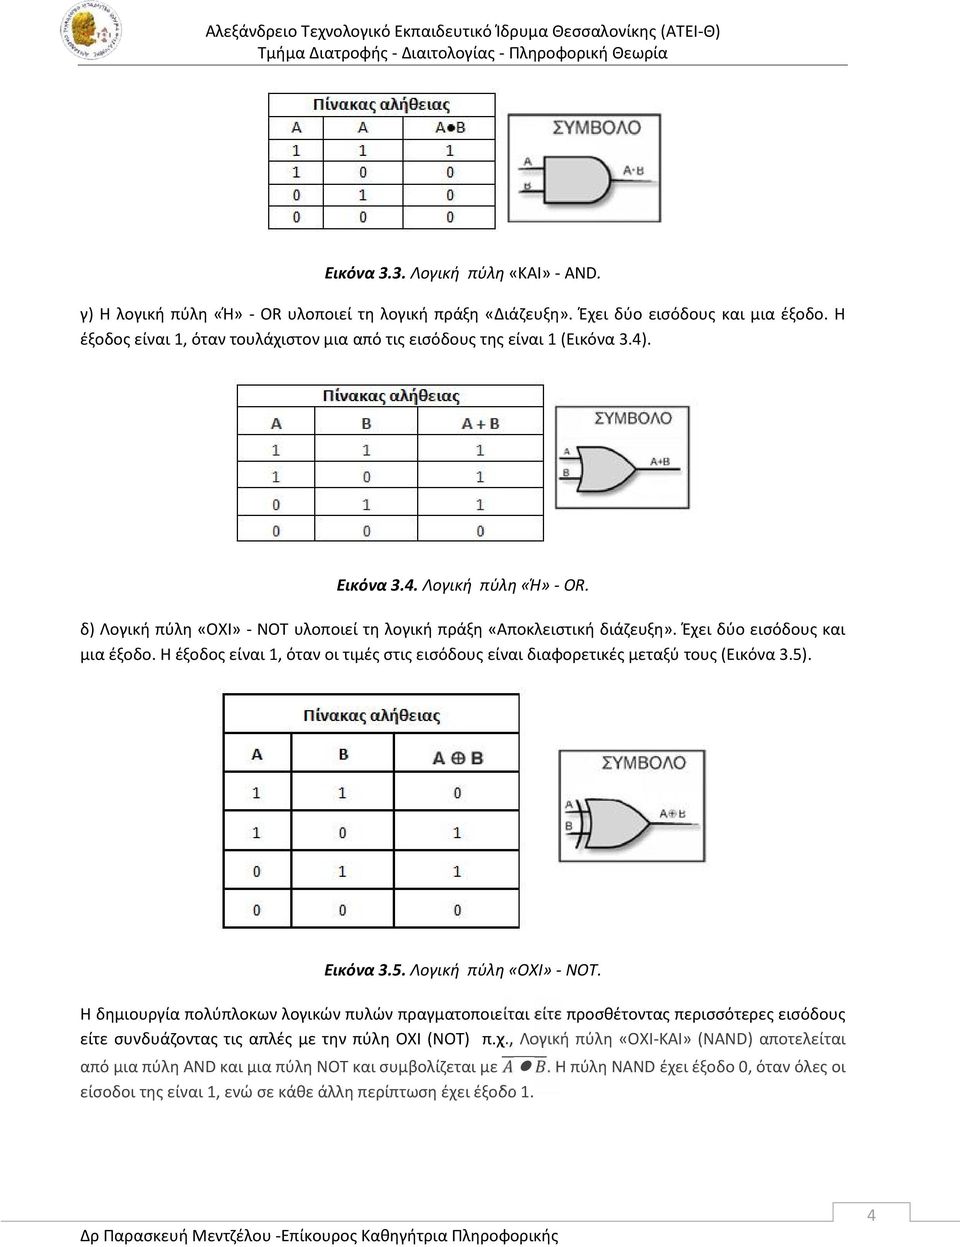 Έχει δύο εισόδους και μια έξοδο. H έξοδος είναι 1, όταν οι τιμές στις εισόδους είναι διαφορετικές μεταξύ τους (Εικόνα 3.5). Εικόνα 3.5. Λογική πύλη «ΟΧΙ» - NOT.